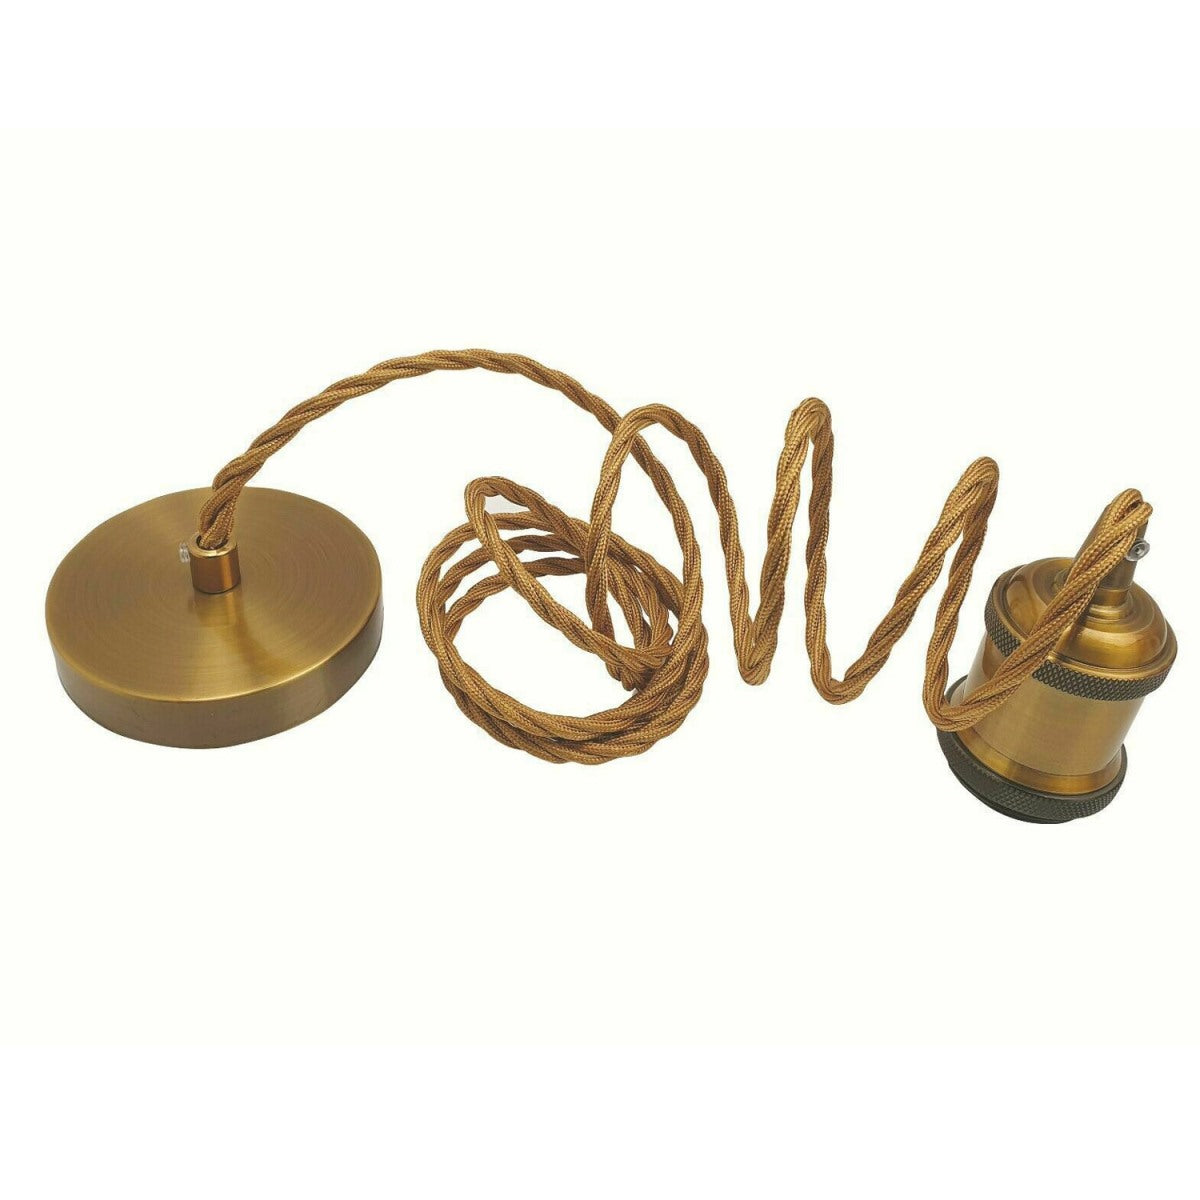 2m Gold Twisted Cable E27 Base Pendant Yellow Brass Holder~1736 - LEDSone UK Ltd